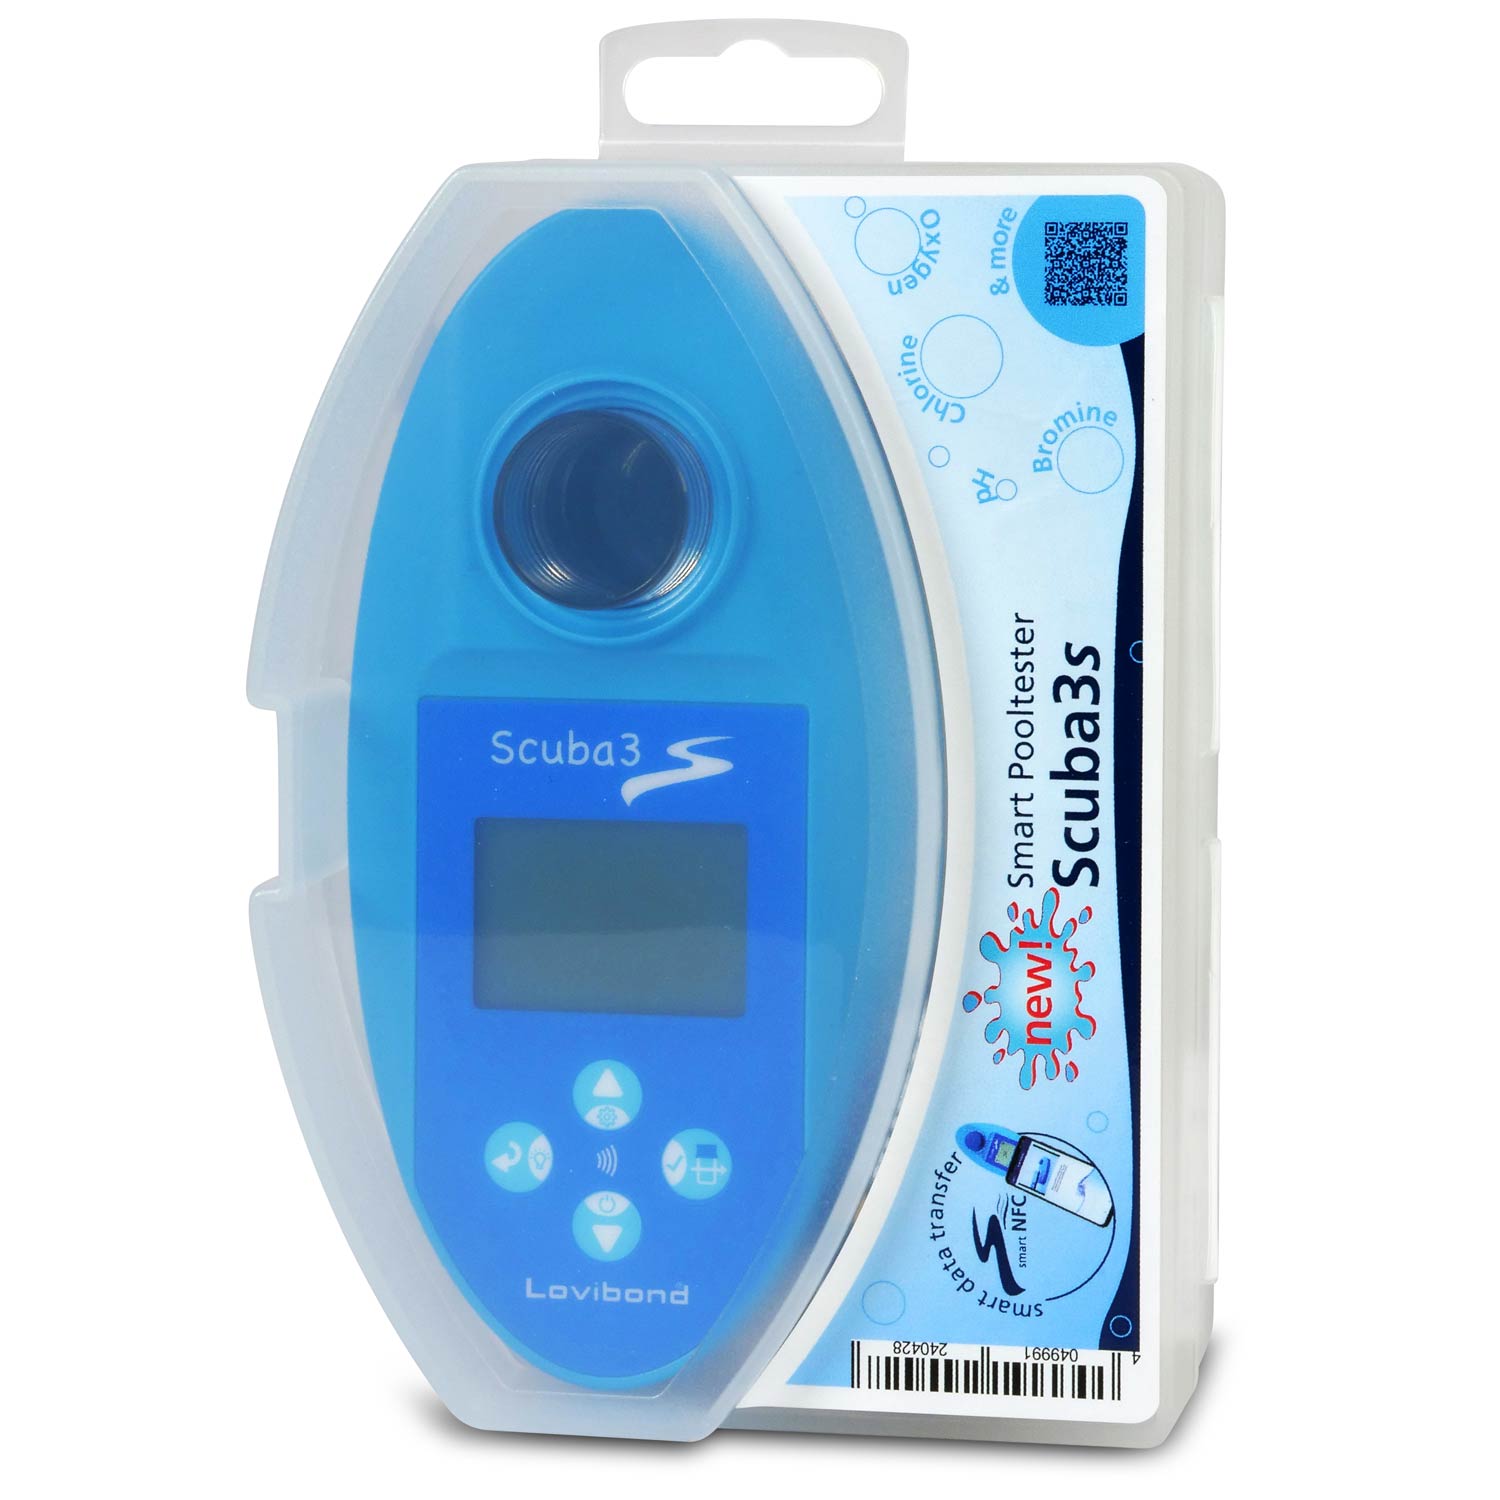 SCUBA 3s Elektronischer Pooltester mit NFC